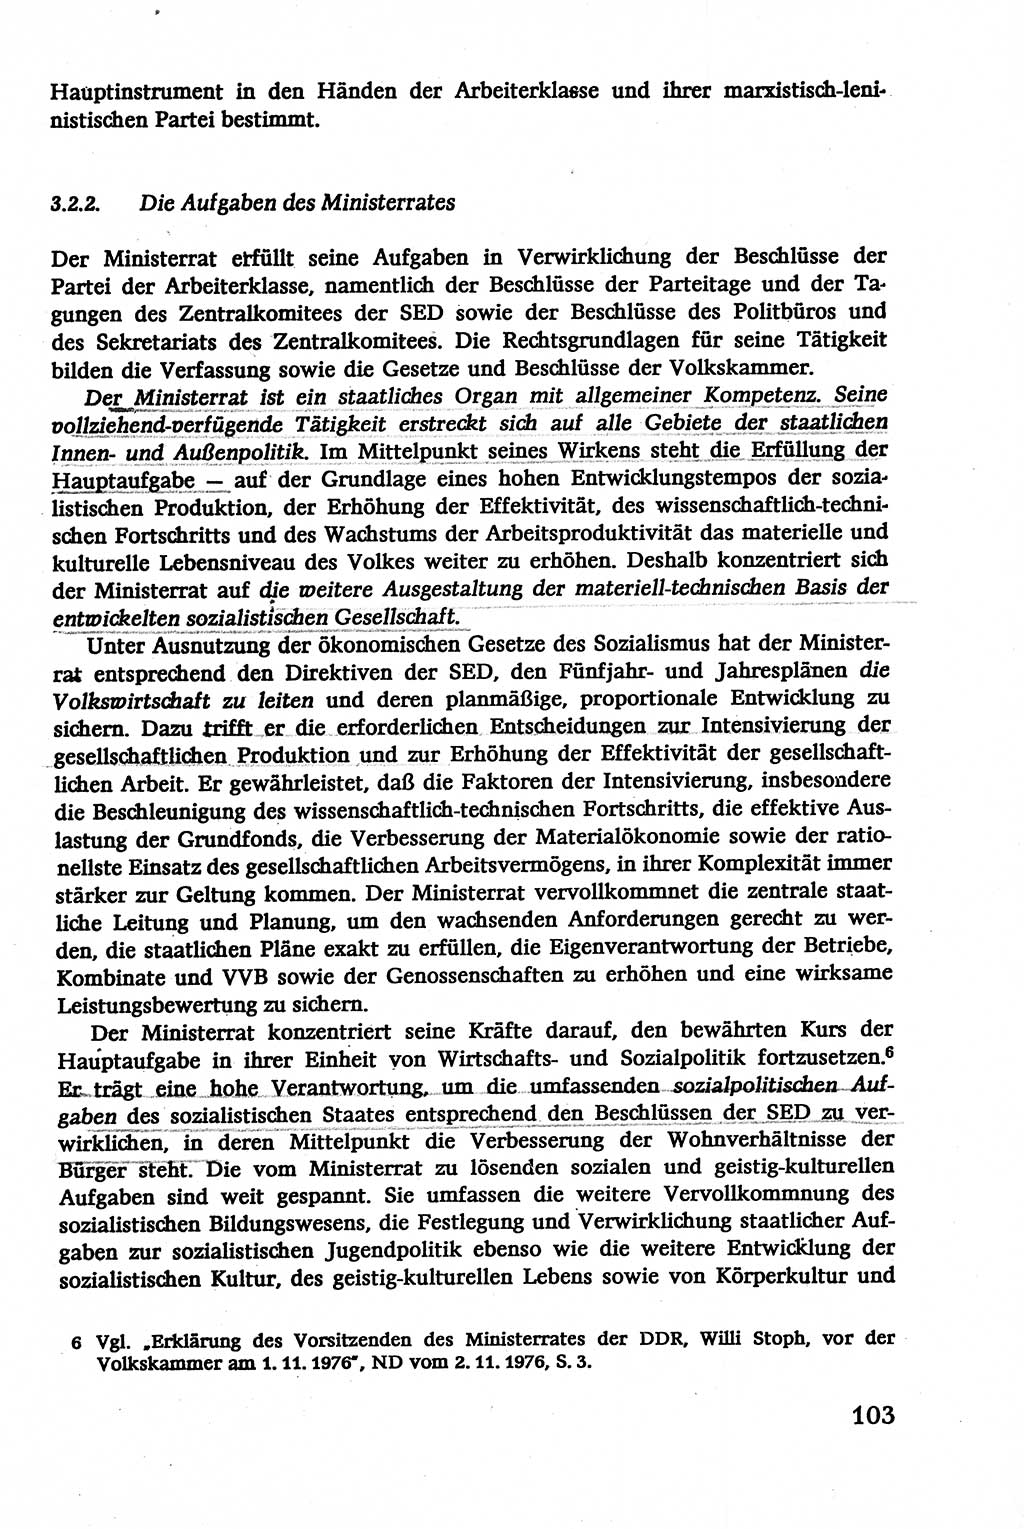 Verwaltungsrecht [Deutsche Demokratische Republik (DDR)], Lehrbuch 1979, Seite 103 (Verw.-R. DDR Lb. 1979, S. 103)